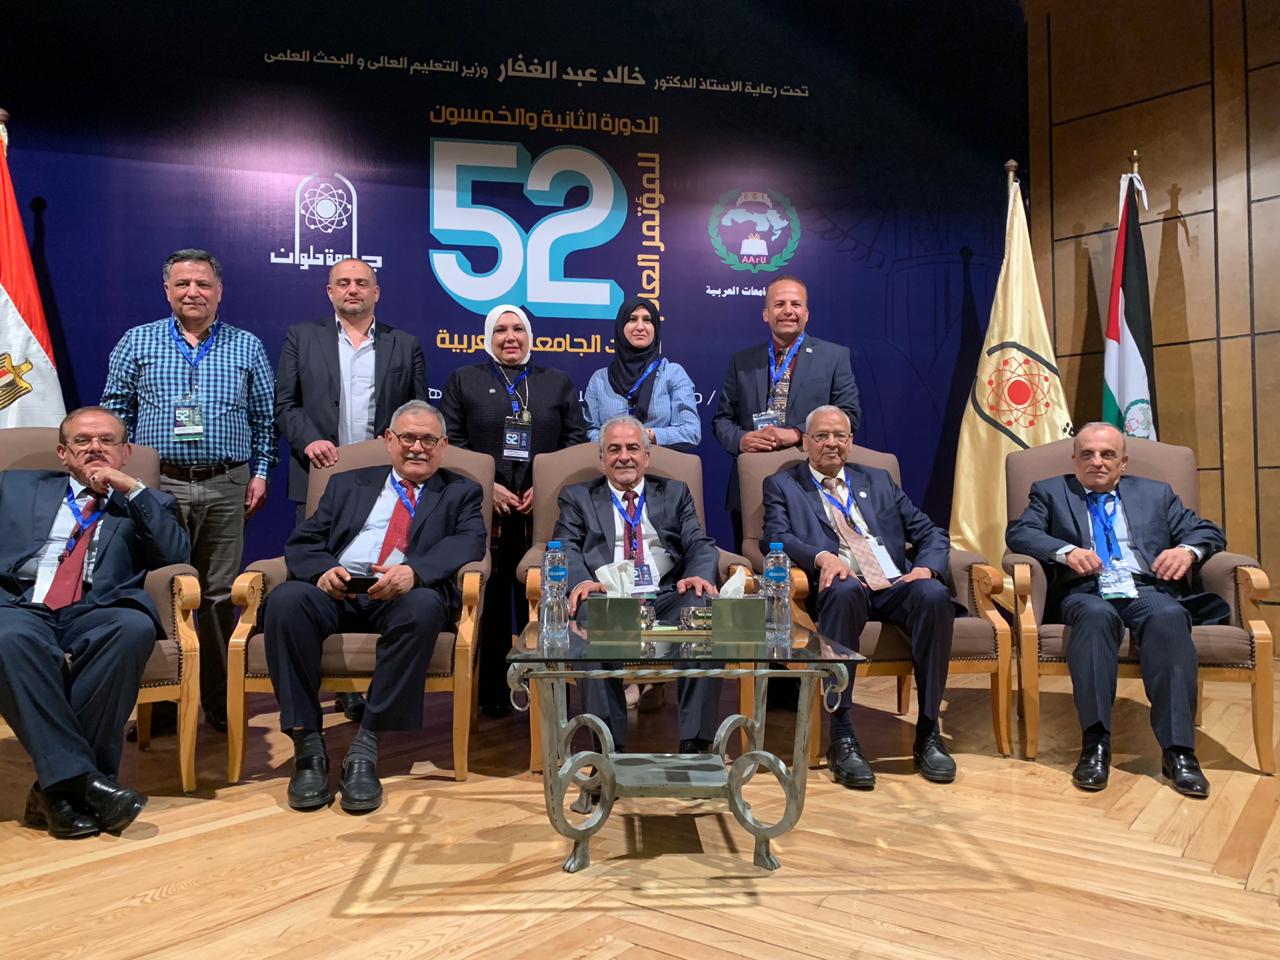 رئيس جامعة عمان الأهلية يترأس الاجتماع الأول للجنة المجالس والمراكز باتحاد الجامعات العربية في شرم الشيخ